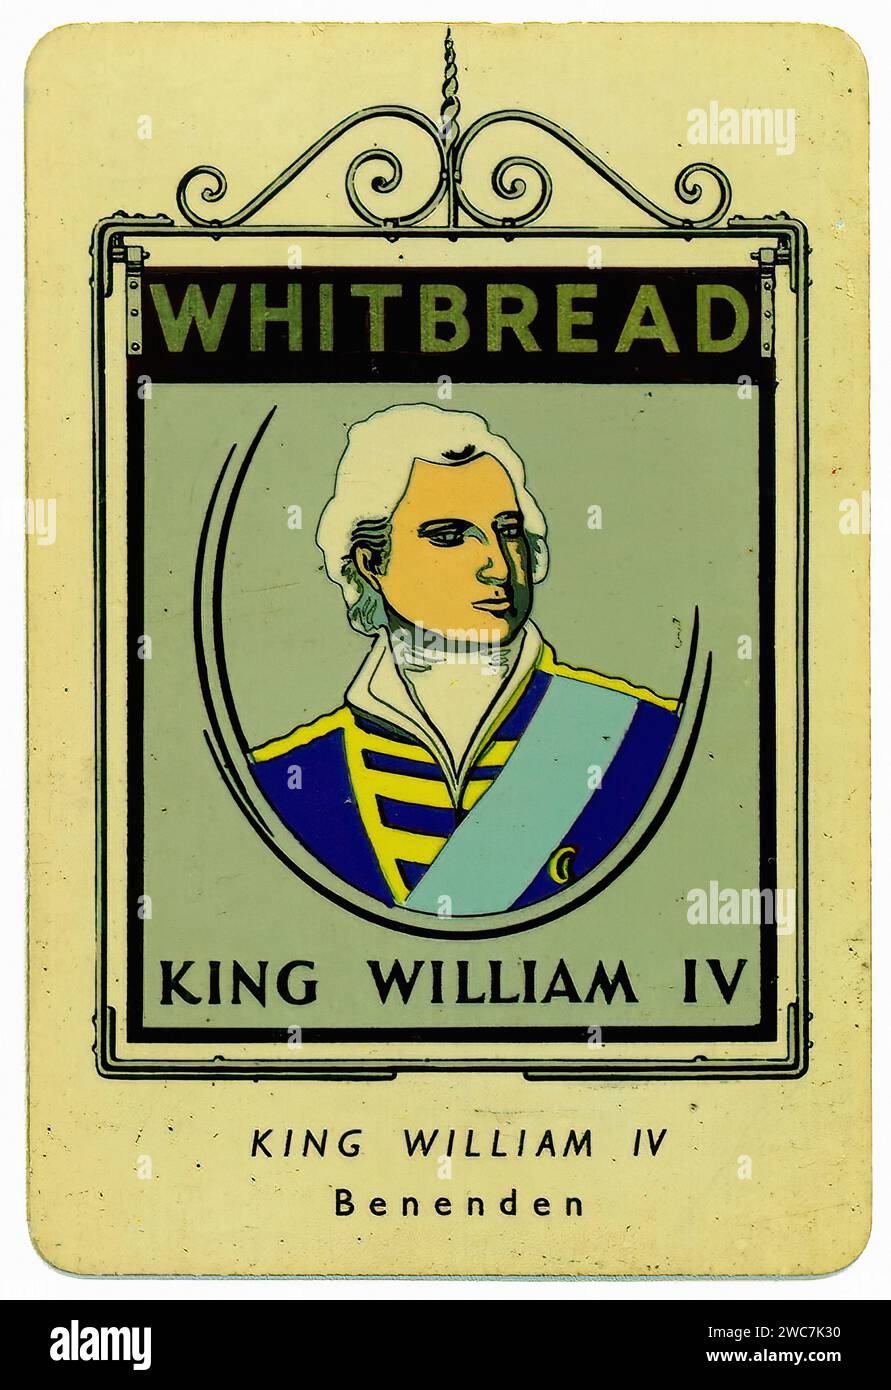 König Wilhelm IV. – Illustration der Vintage Whitbread Inn-Schilder Stockfoto